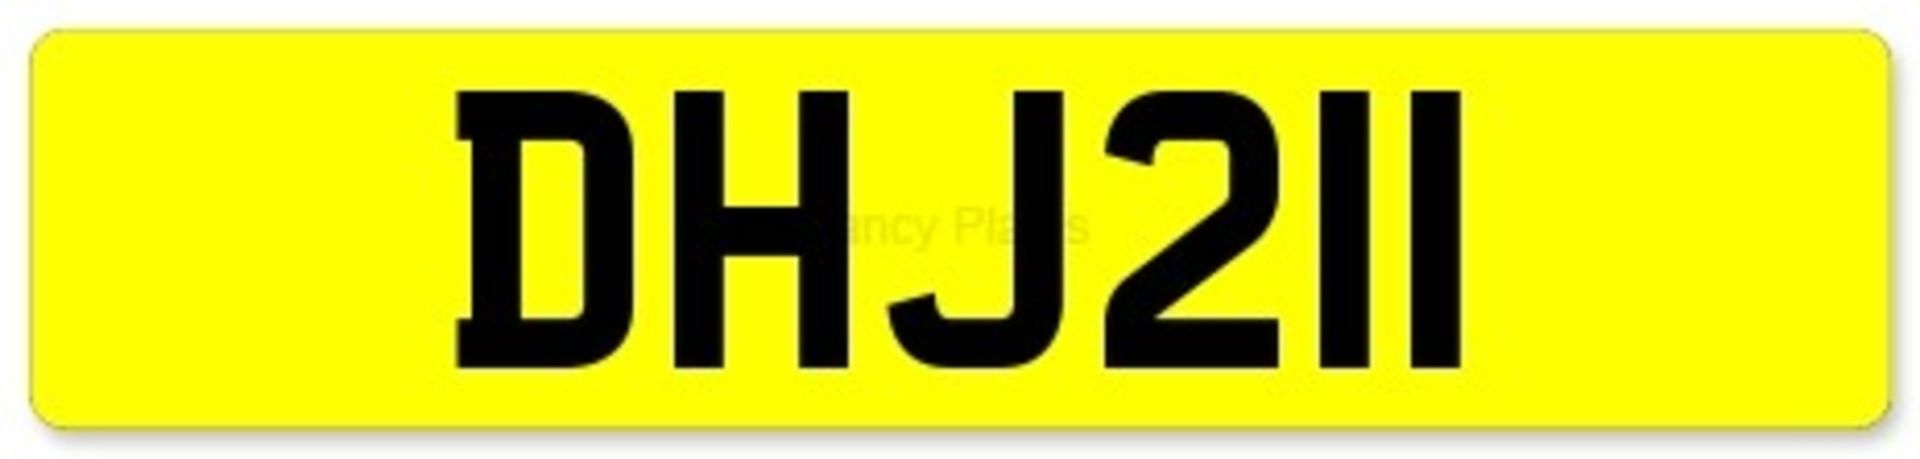 Cherished Registration - DHJ 211 (on V778 Retention Certificate expiring 29th June 2025)